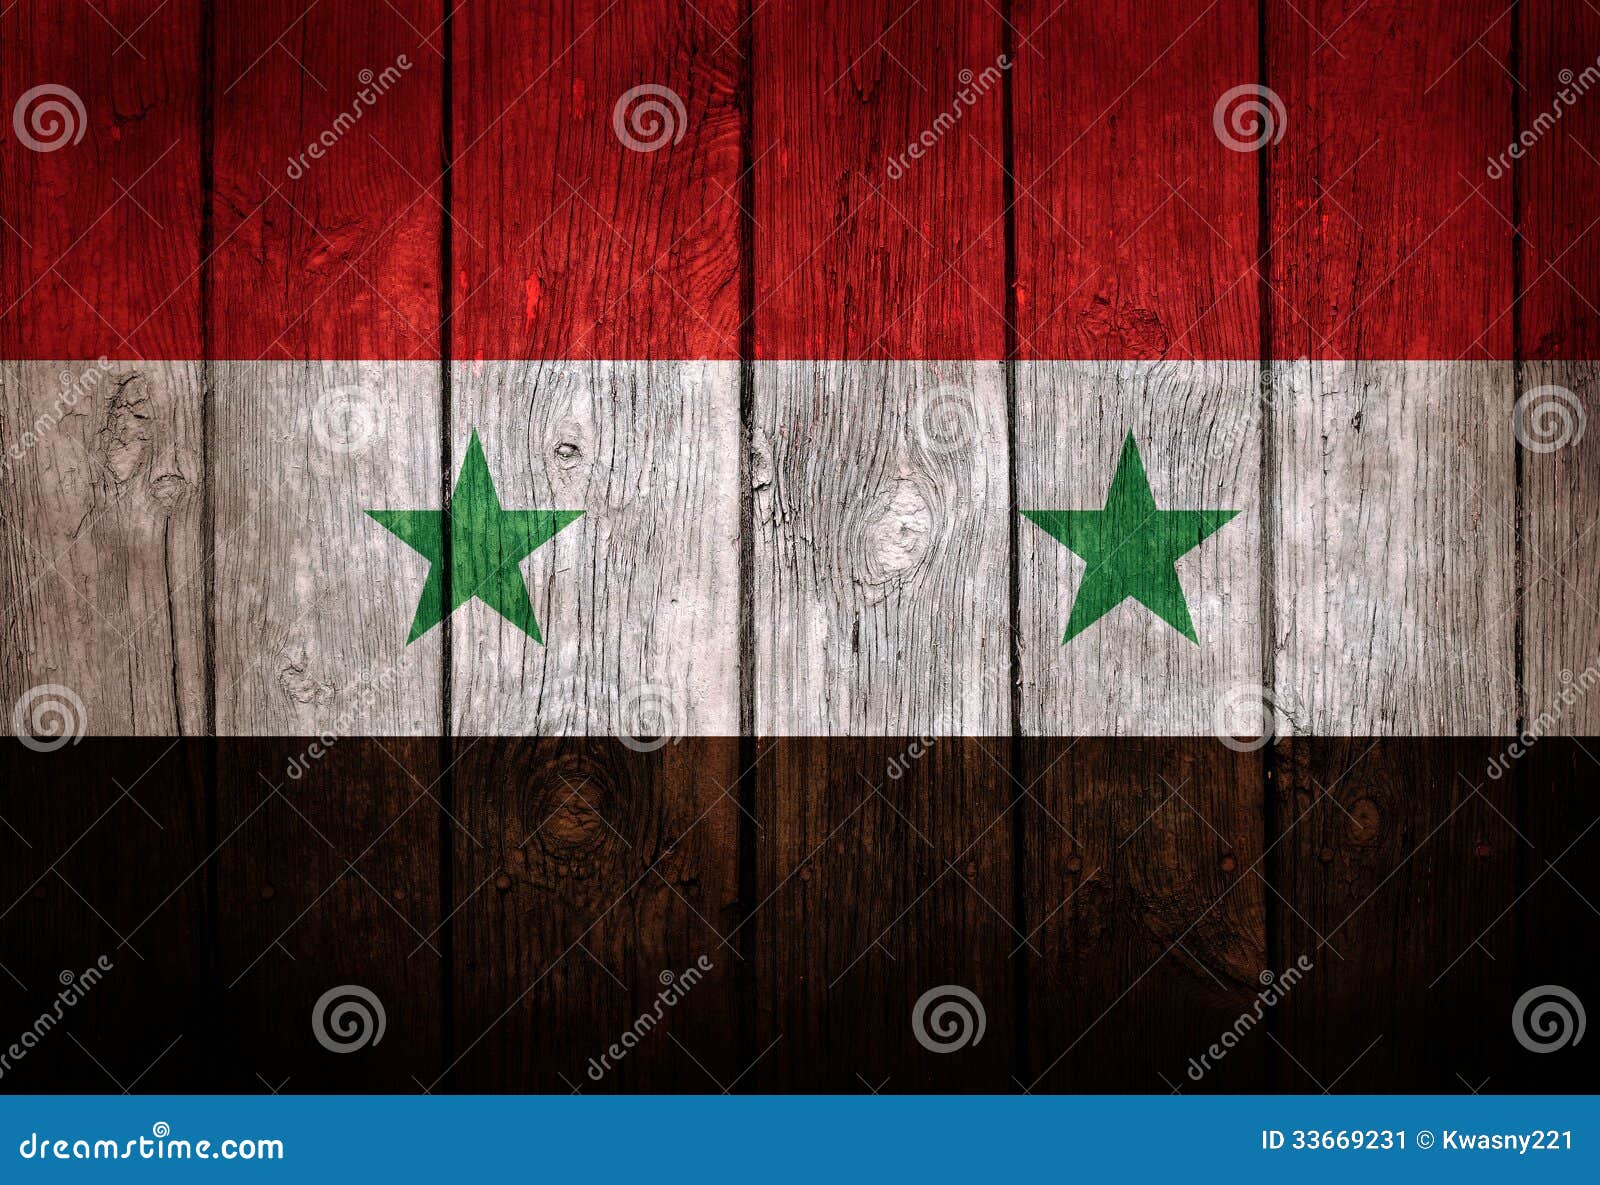 Syrien-Flagge stockbild. Bild von geschichte, muster - 33669231